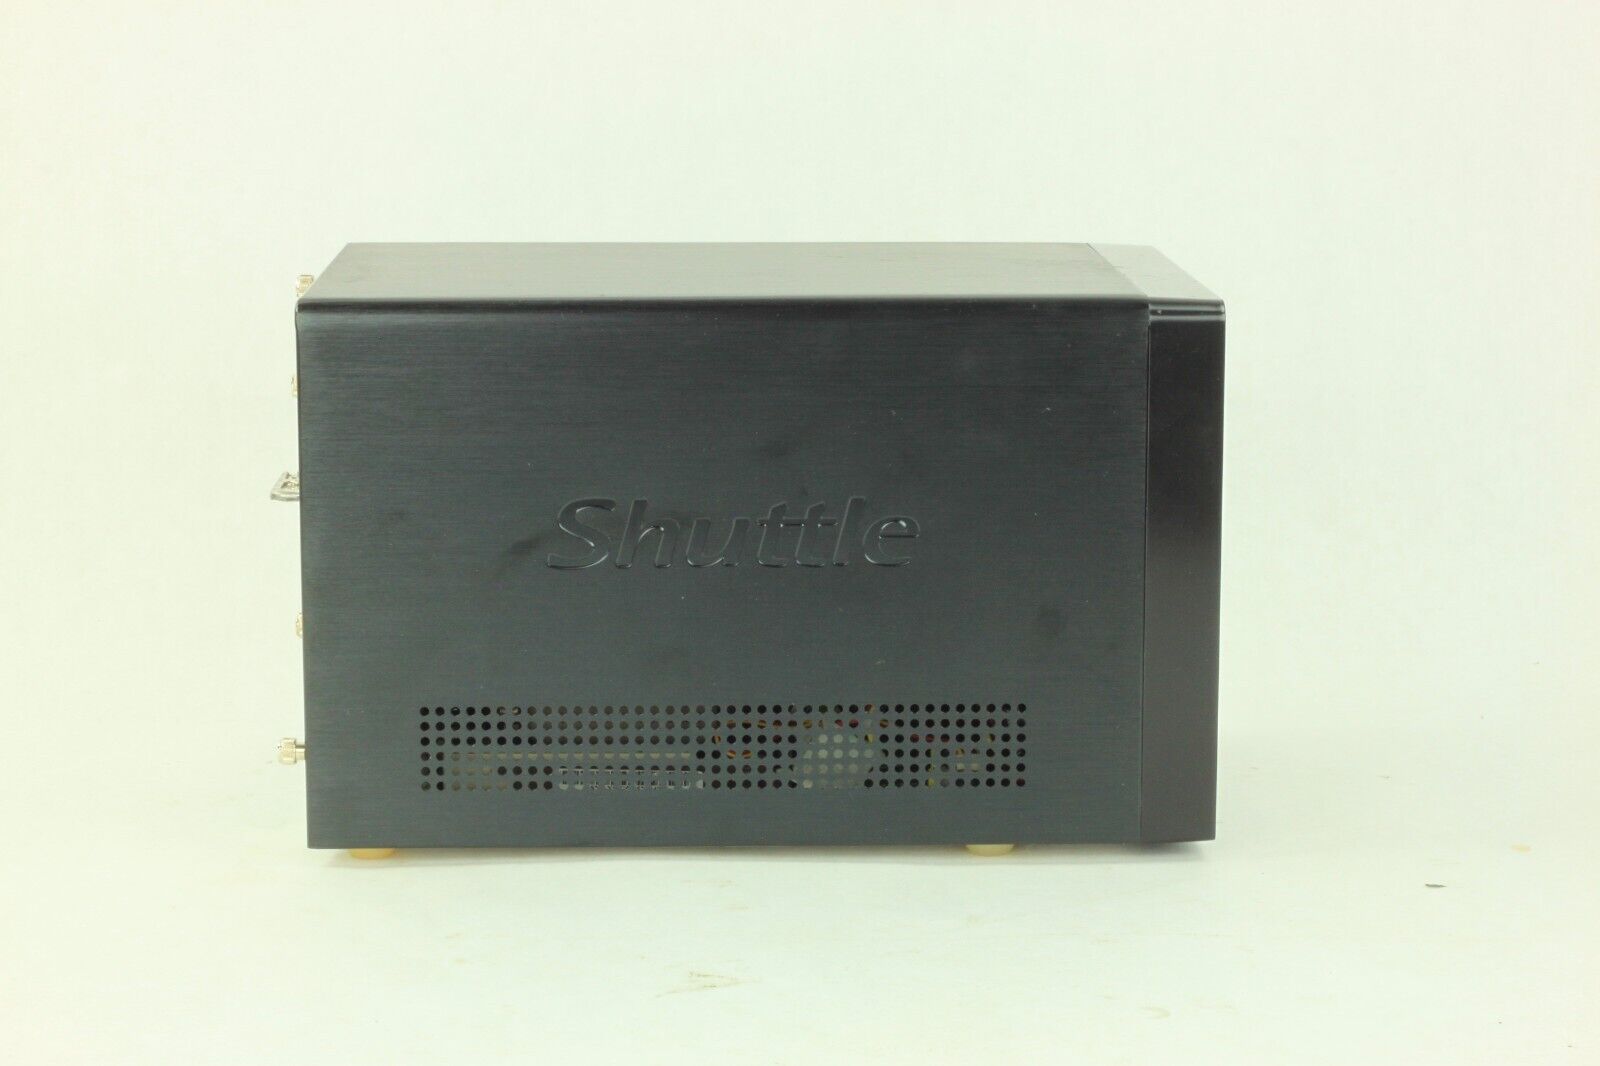 Shuttle SN95G5 SFF Platform AMD Athlon 64 300+ 1.8GHz 1GB RAM No HDD/OS w/Box